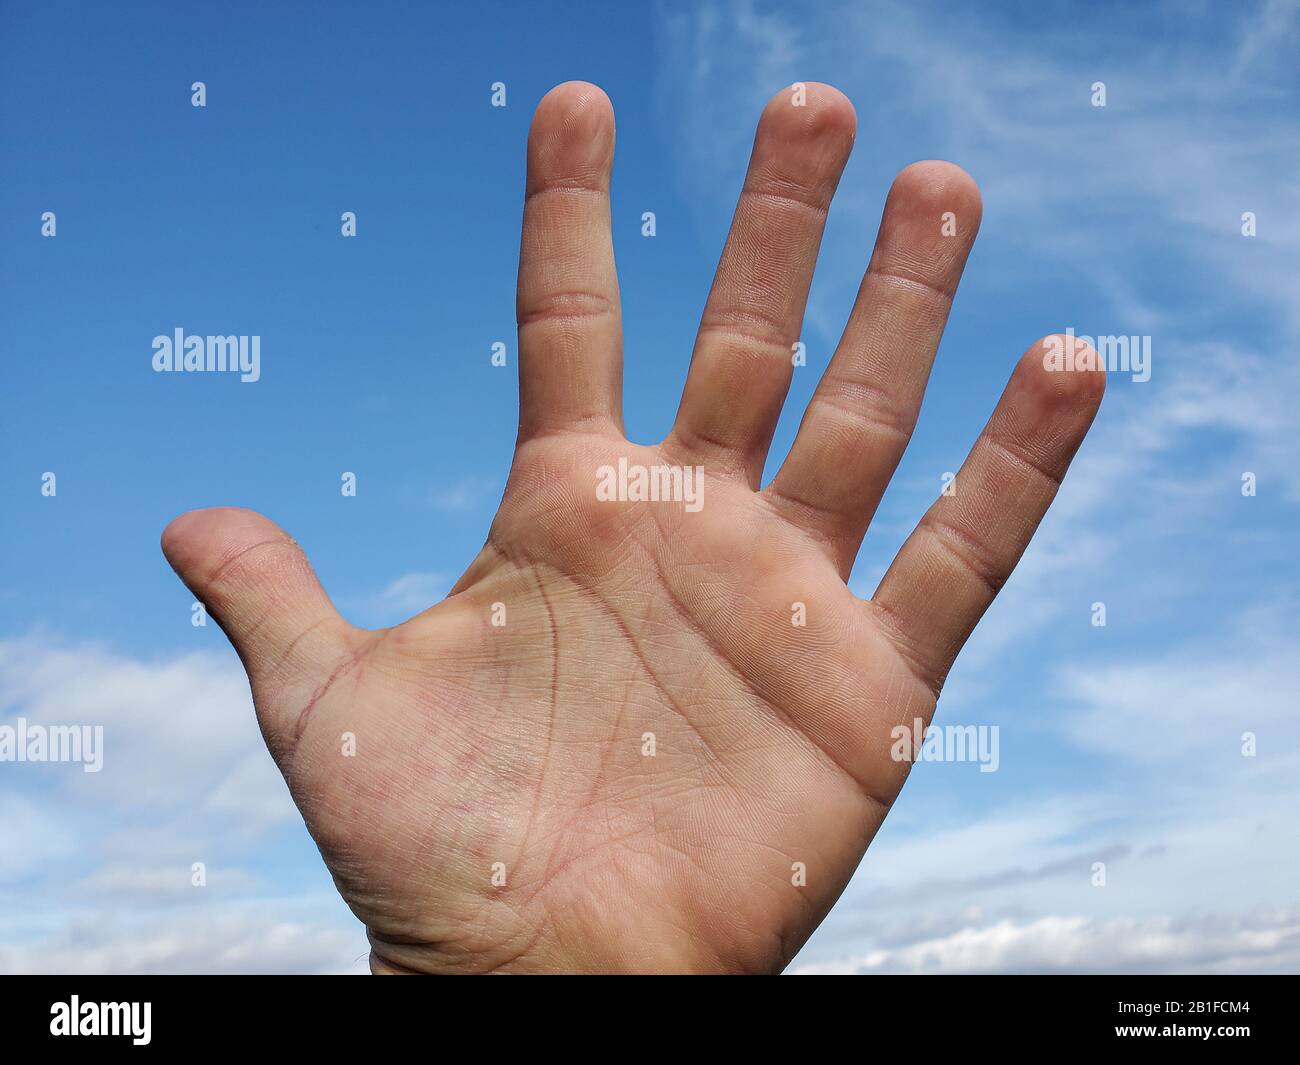 La main humaine sur fond bleu clair, le concept de puissance de l'homme, la liberté Banque D'Images